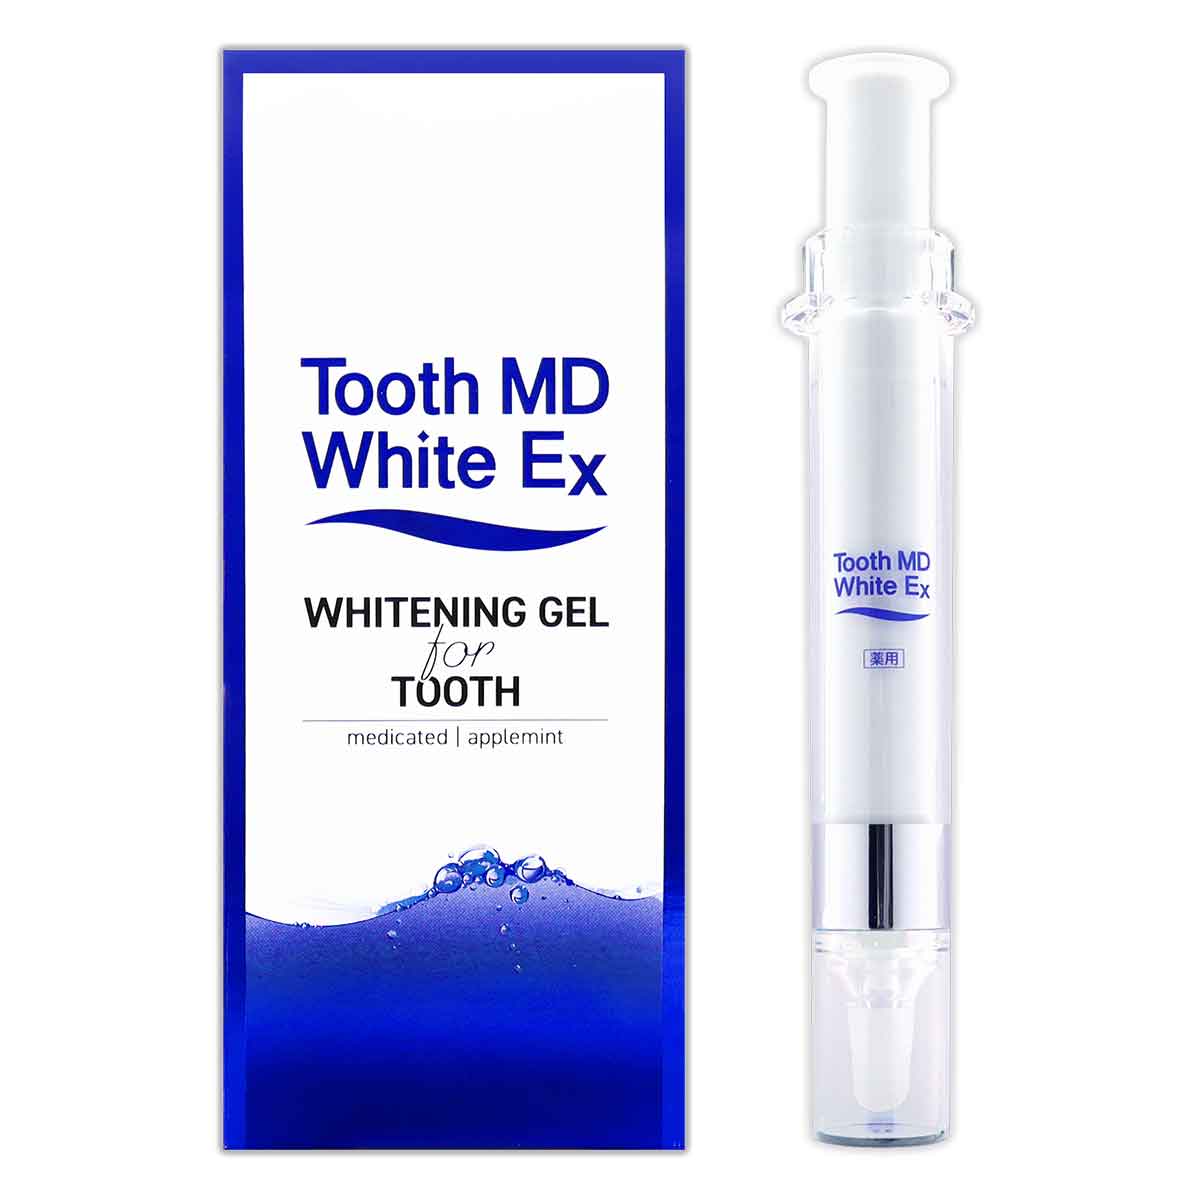 トゥースMDホワイトEX Tooth MD White Ex 11ml ( 約30日分 ) メール便 